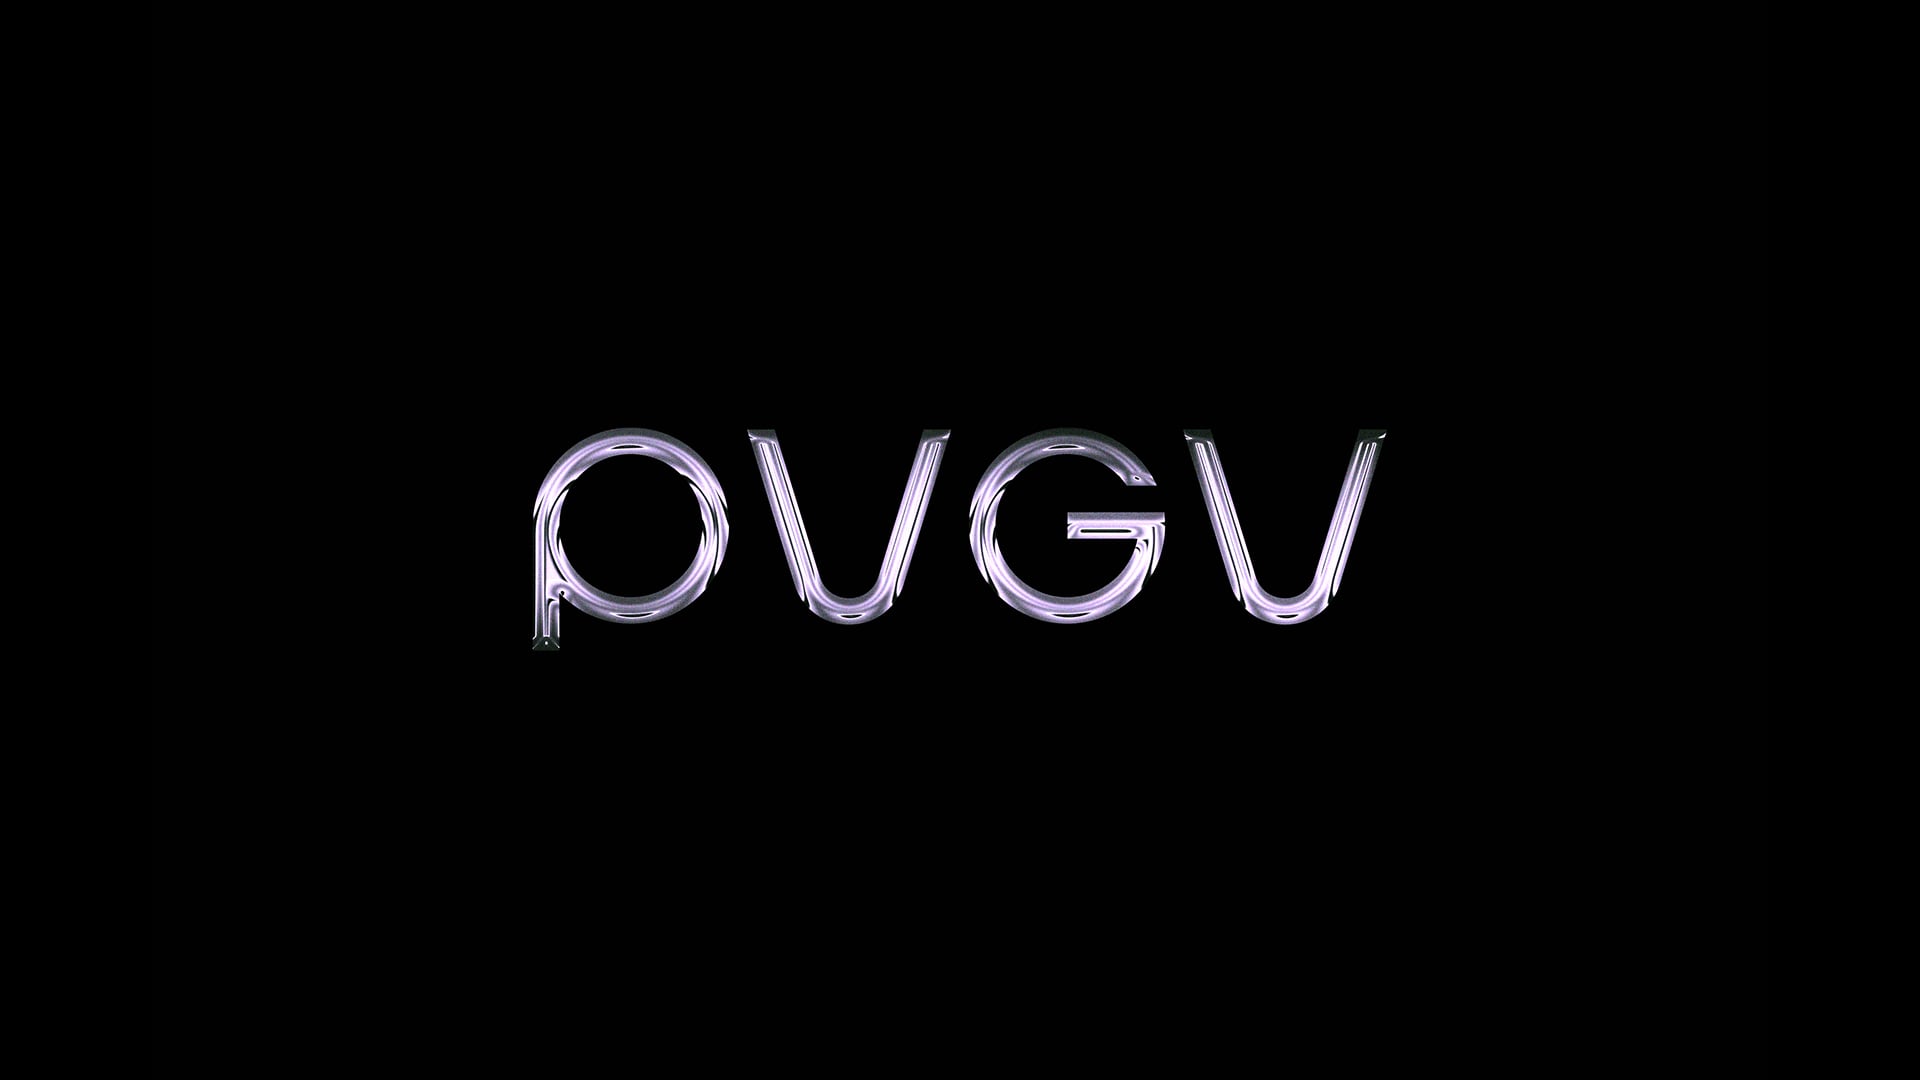 PVGV Chrome logo